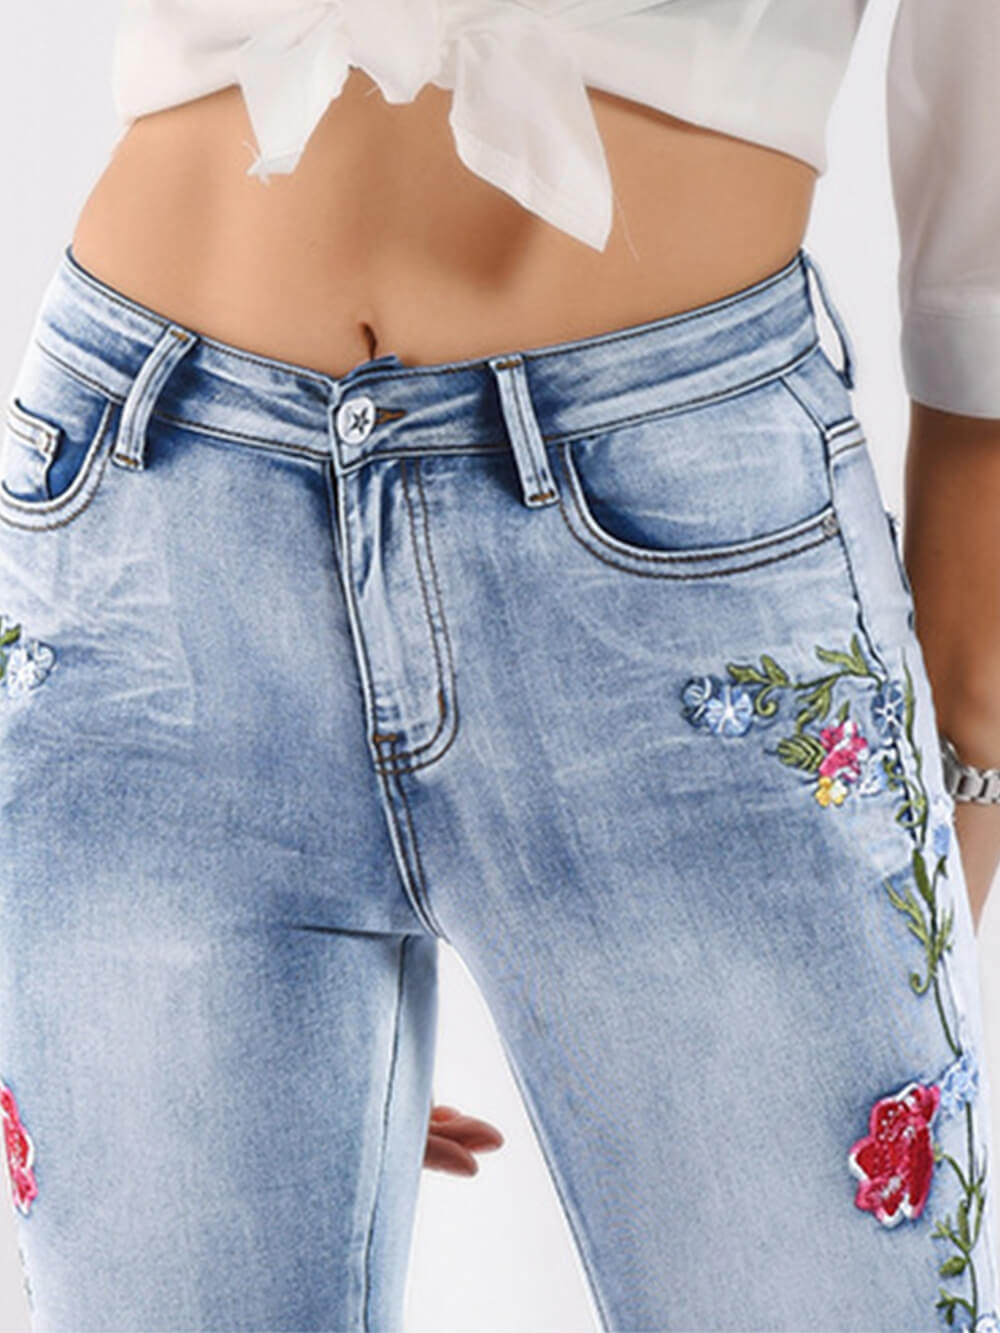 Trojrozměrné vyšívané džíny